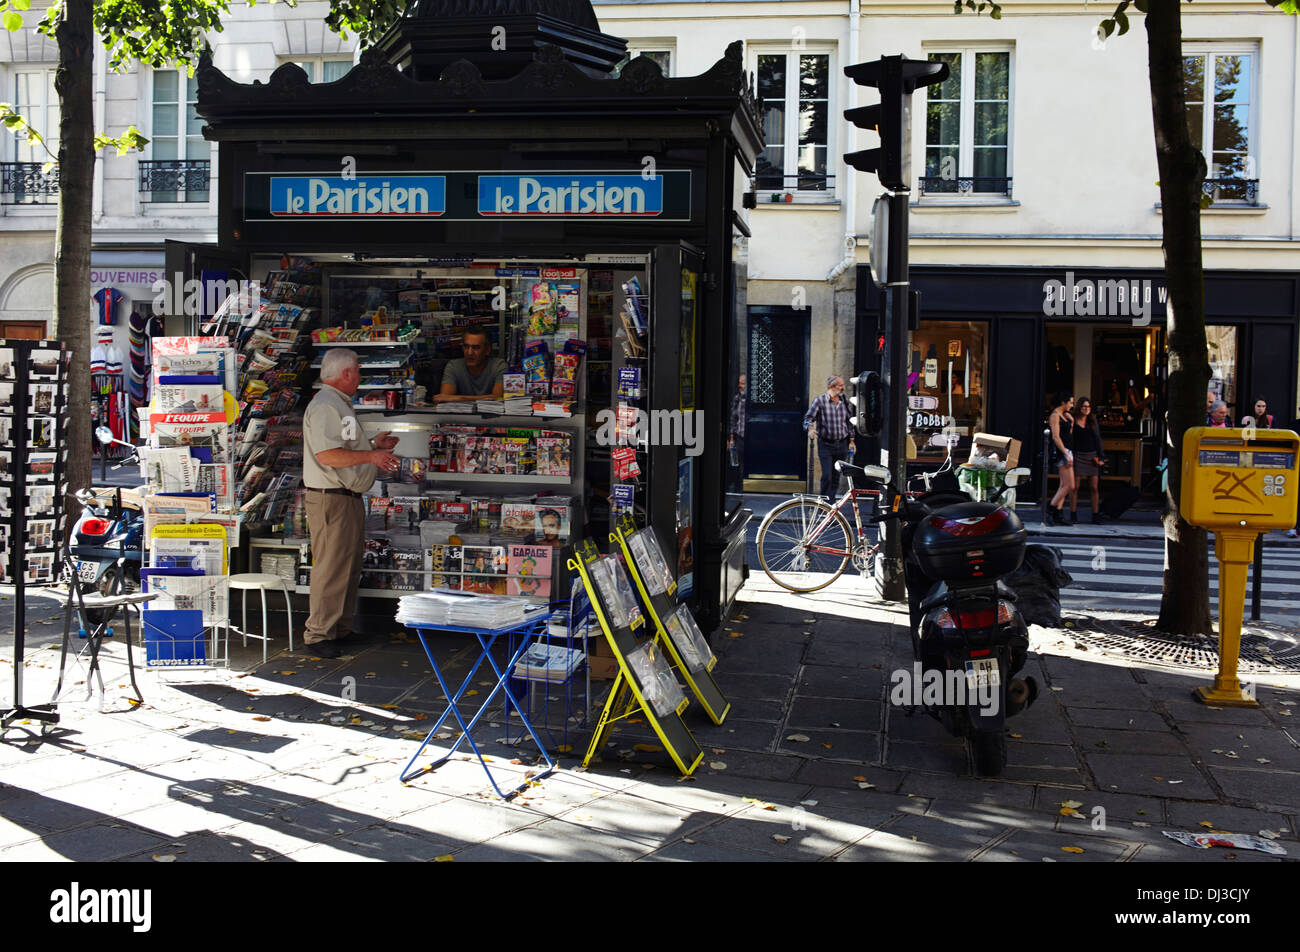 Newspaper kiosk, Paris Stock Photo